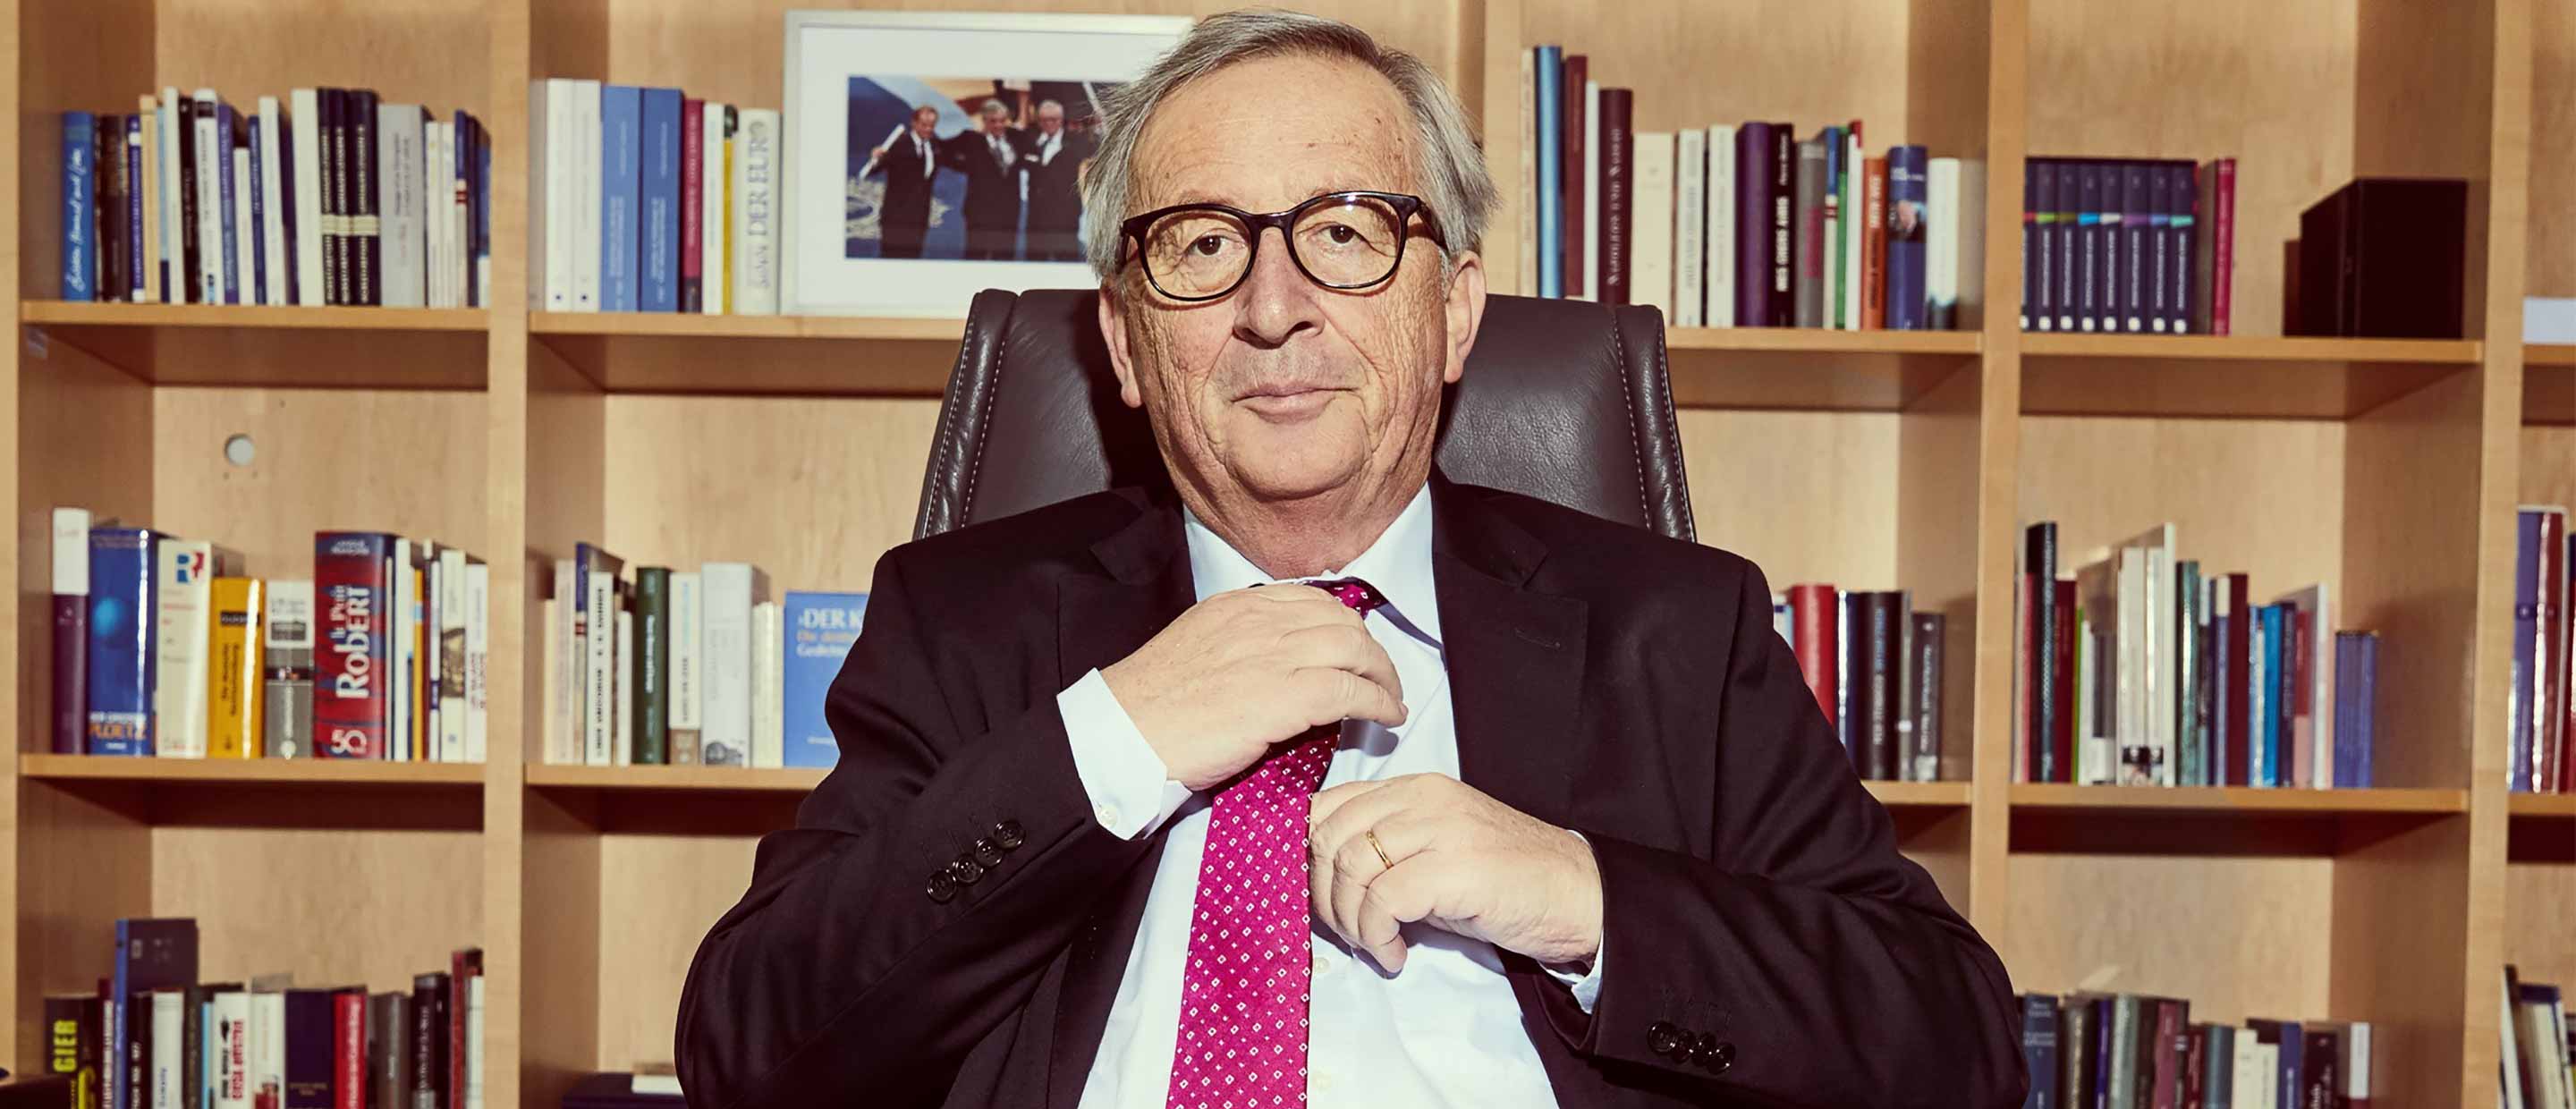 Juncker-Deutsche-Bank-Wealth.jpg